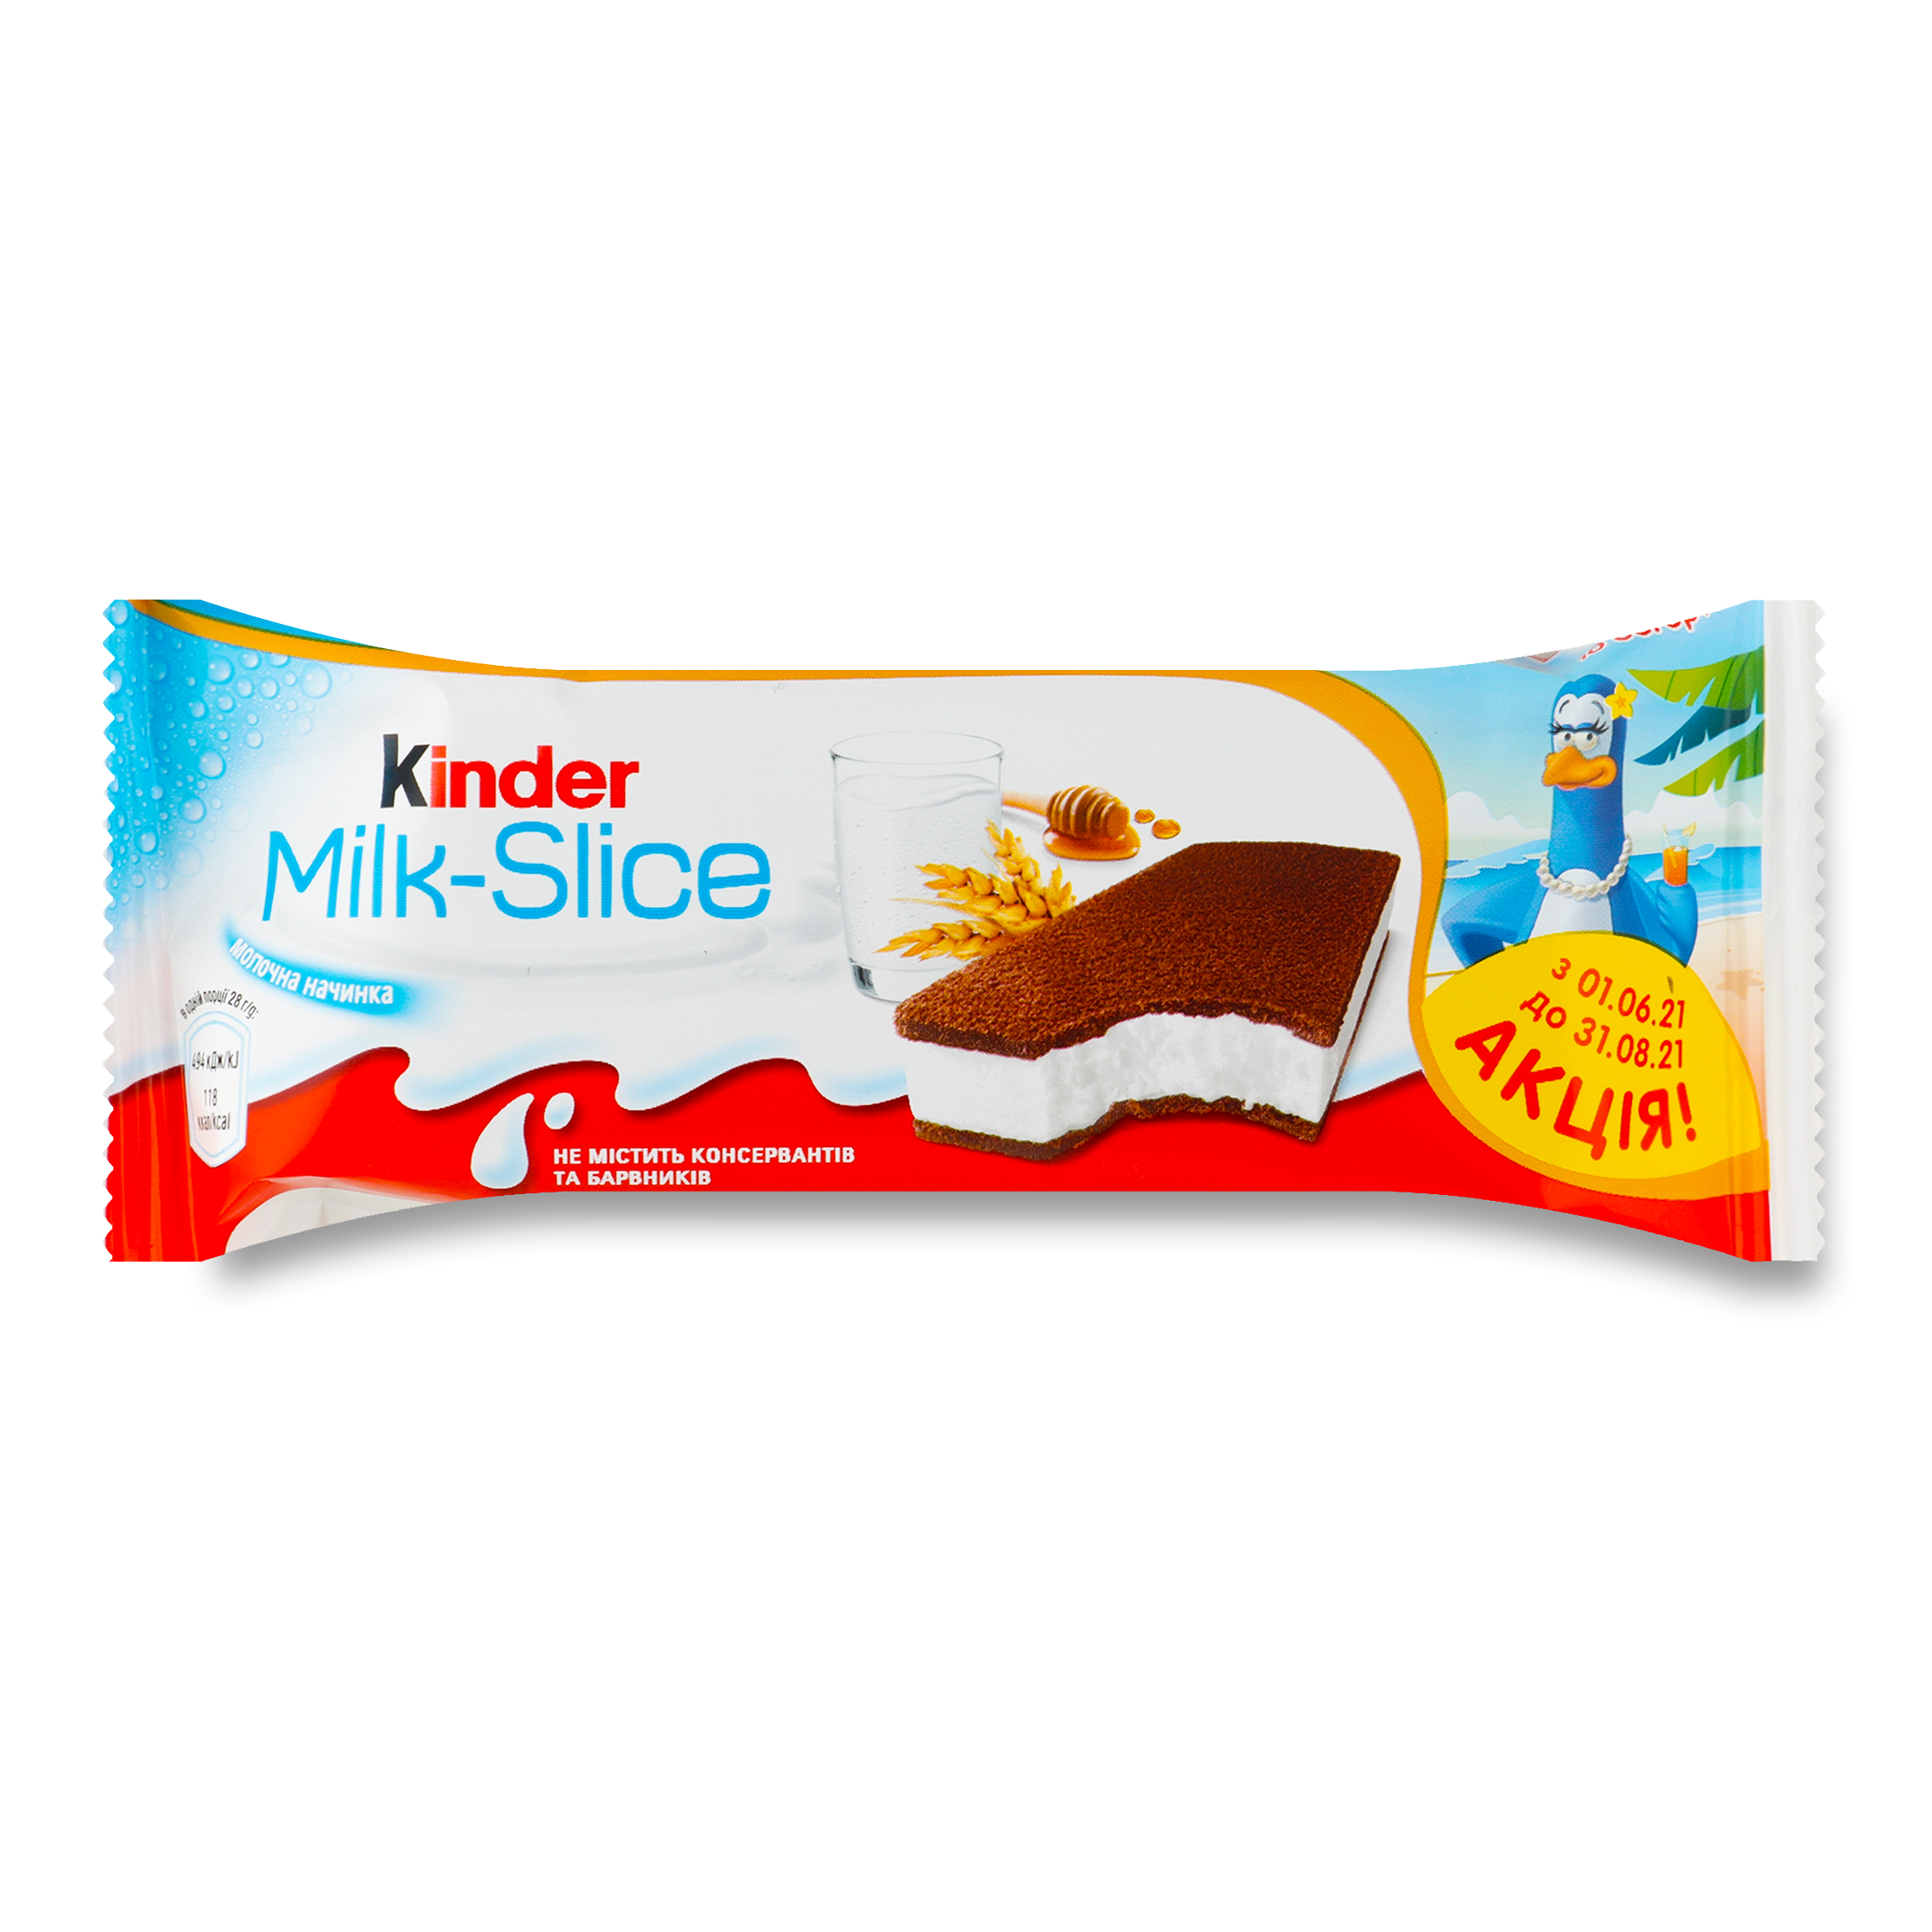 Kinder Milk-Slice With Milk Filling Biscuit Shortcake 28g
